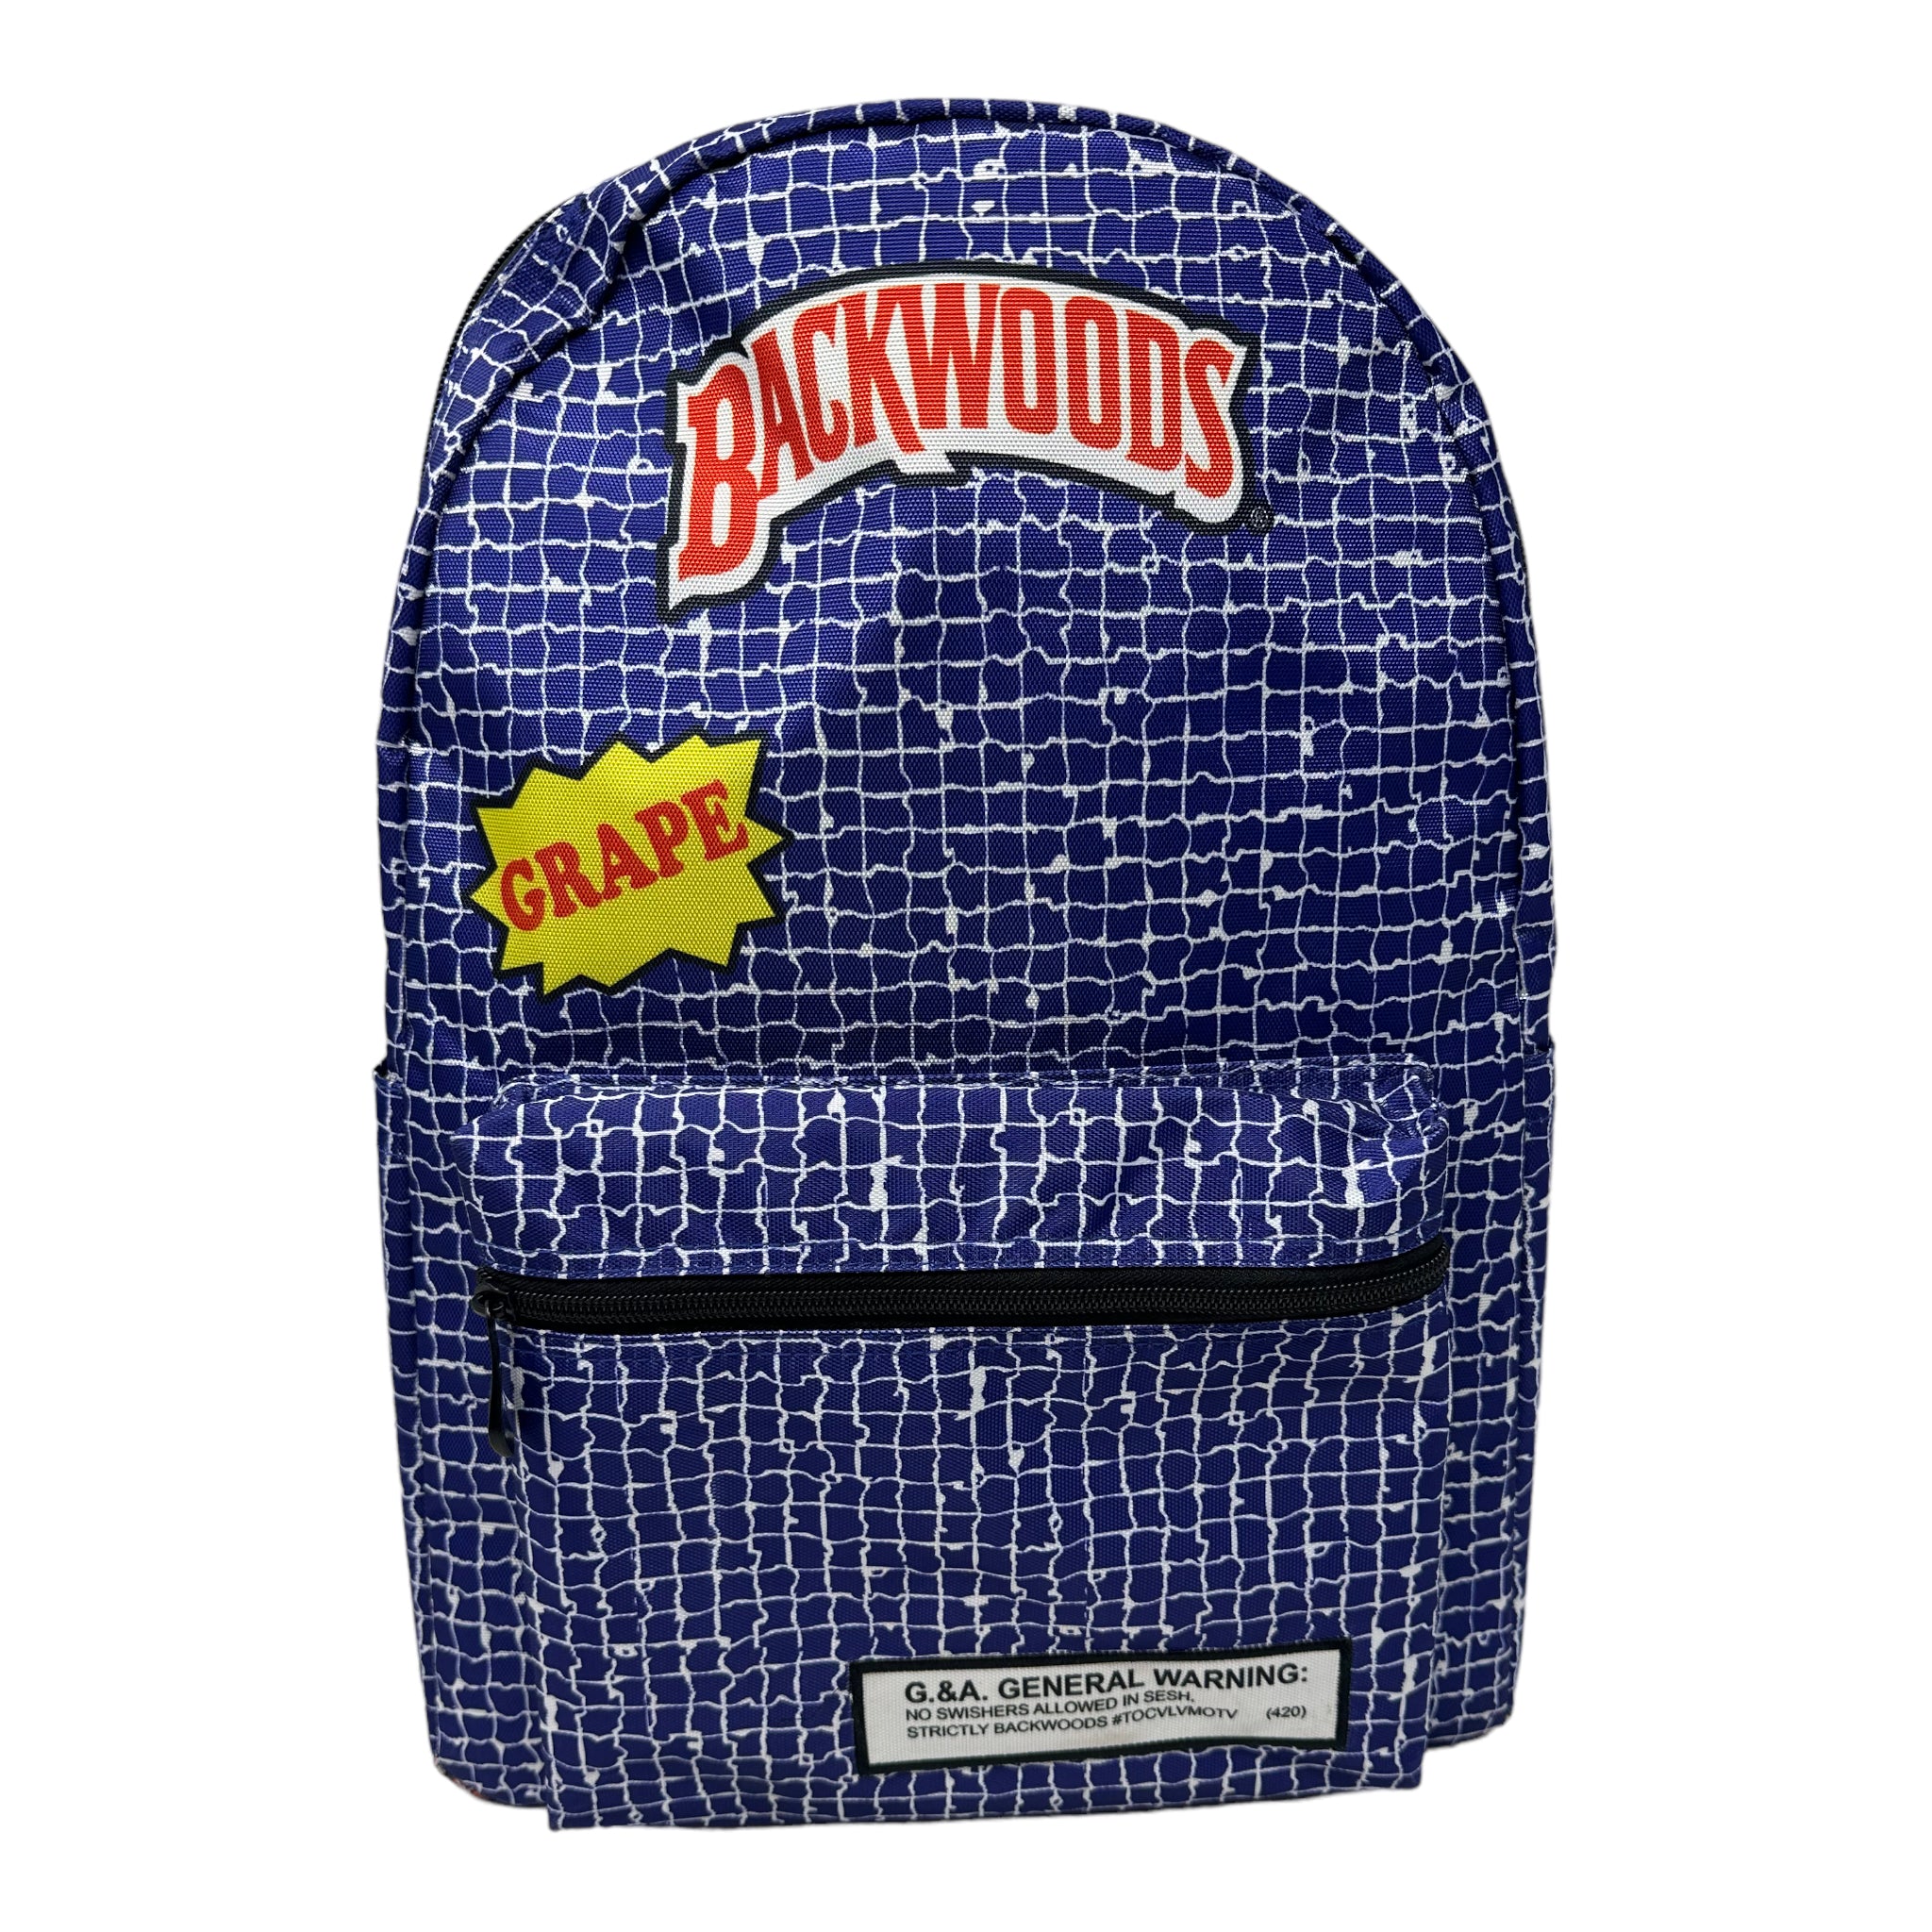 Backwood Backpacks